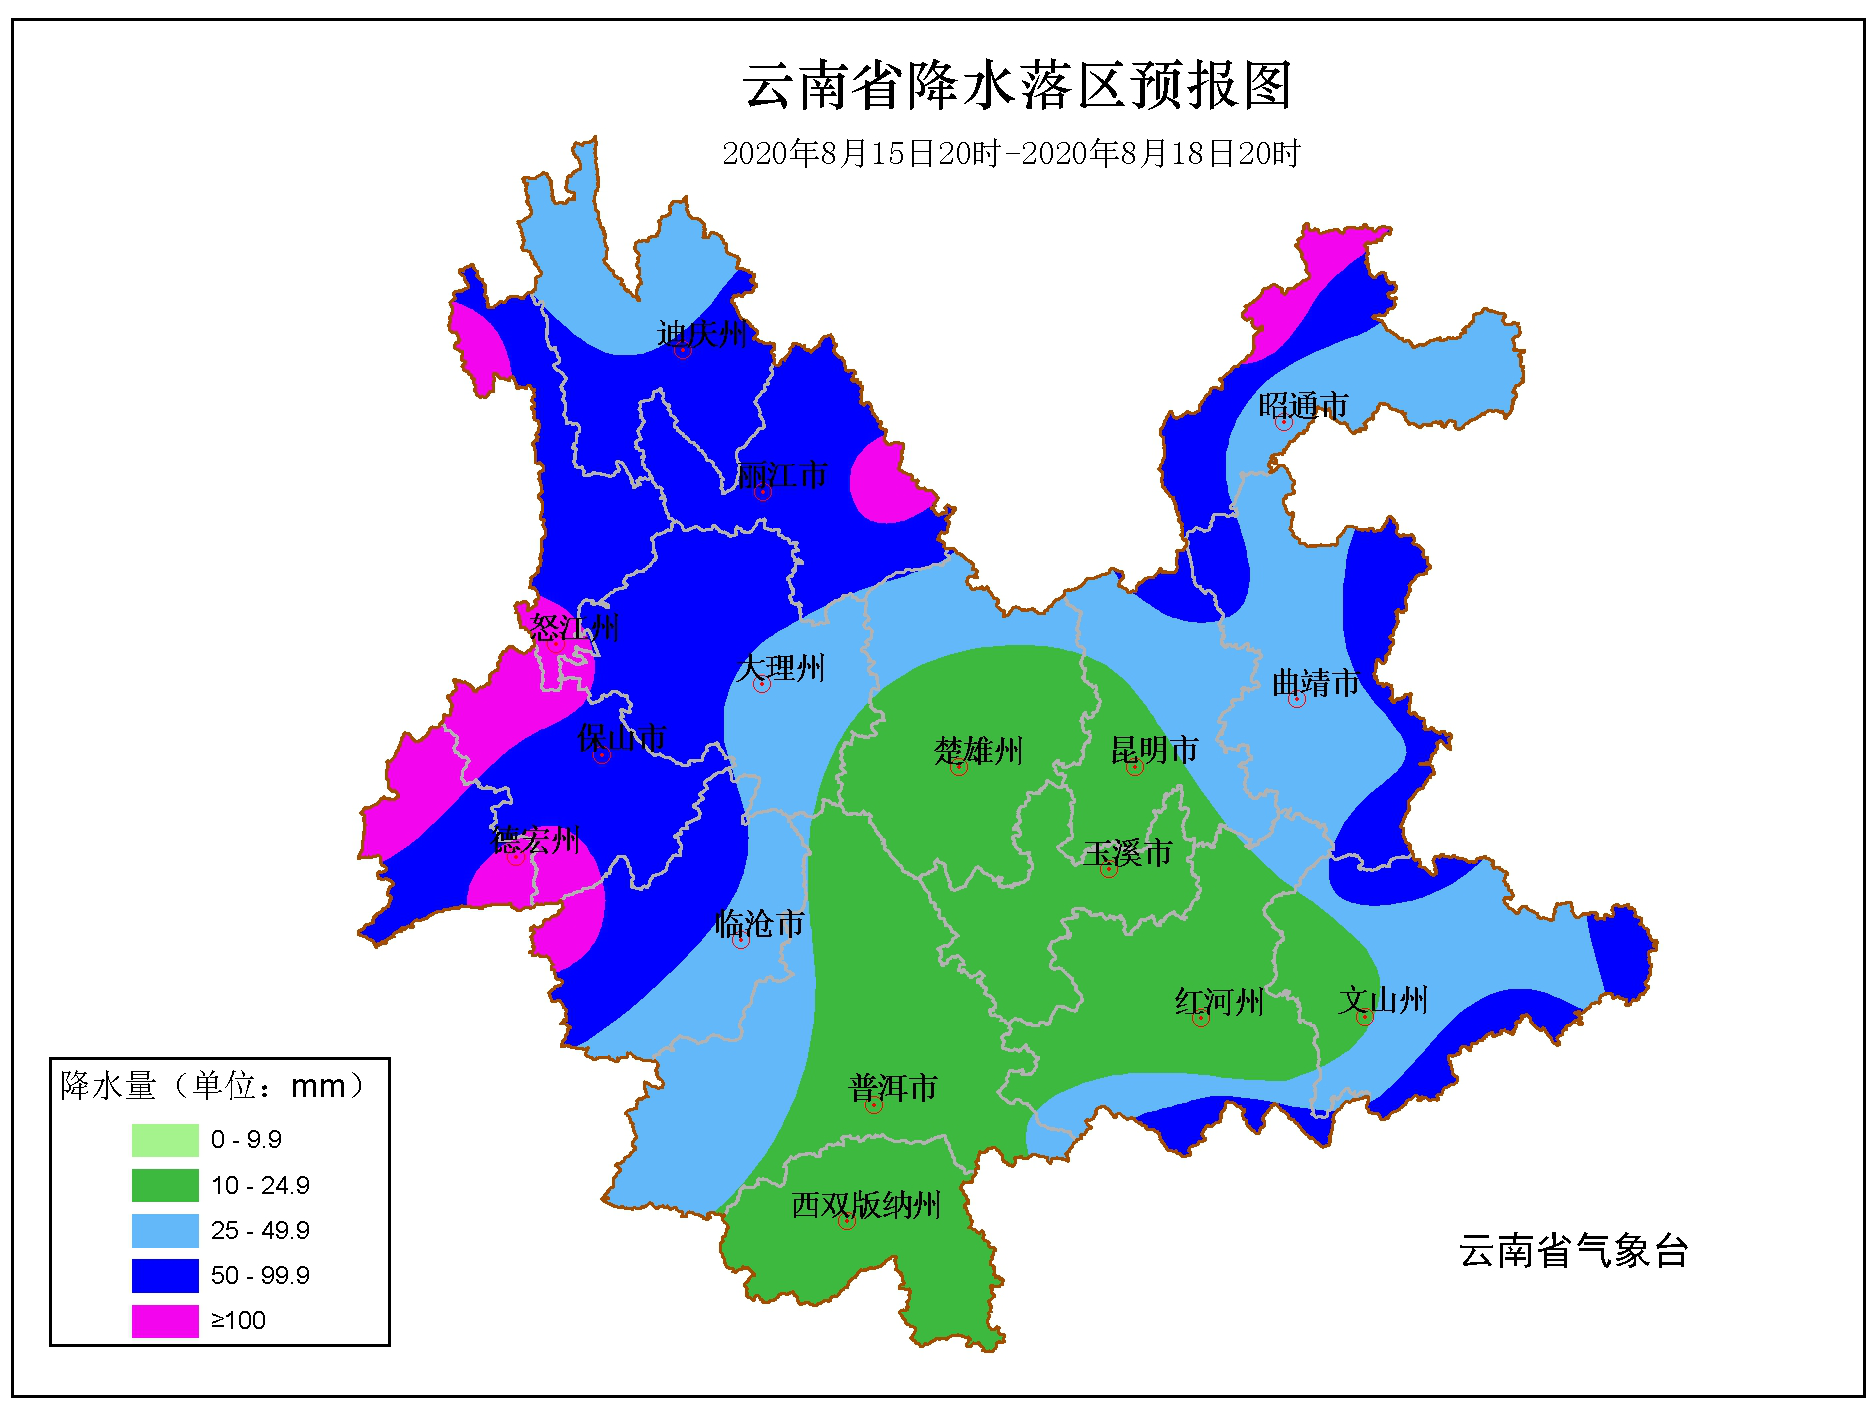 8月15夜间至18日滇西北、滇西和滇东将出现 区域性强降水